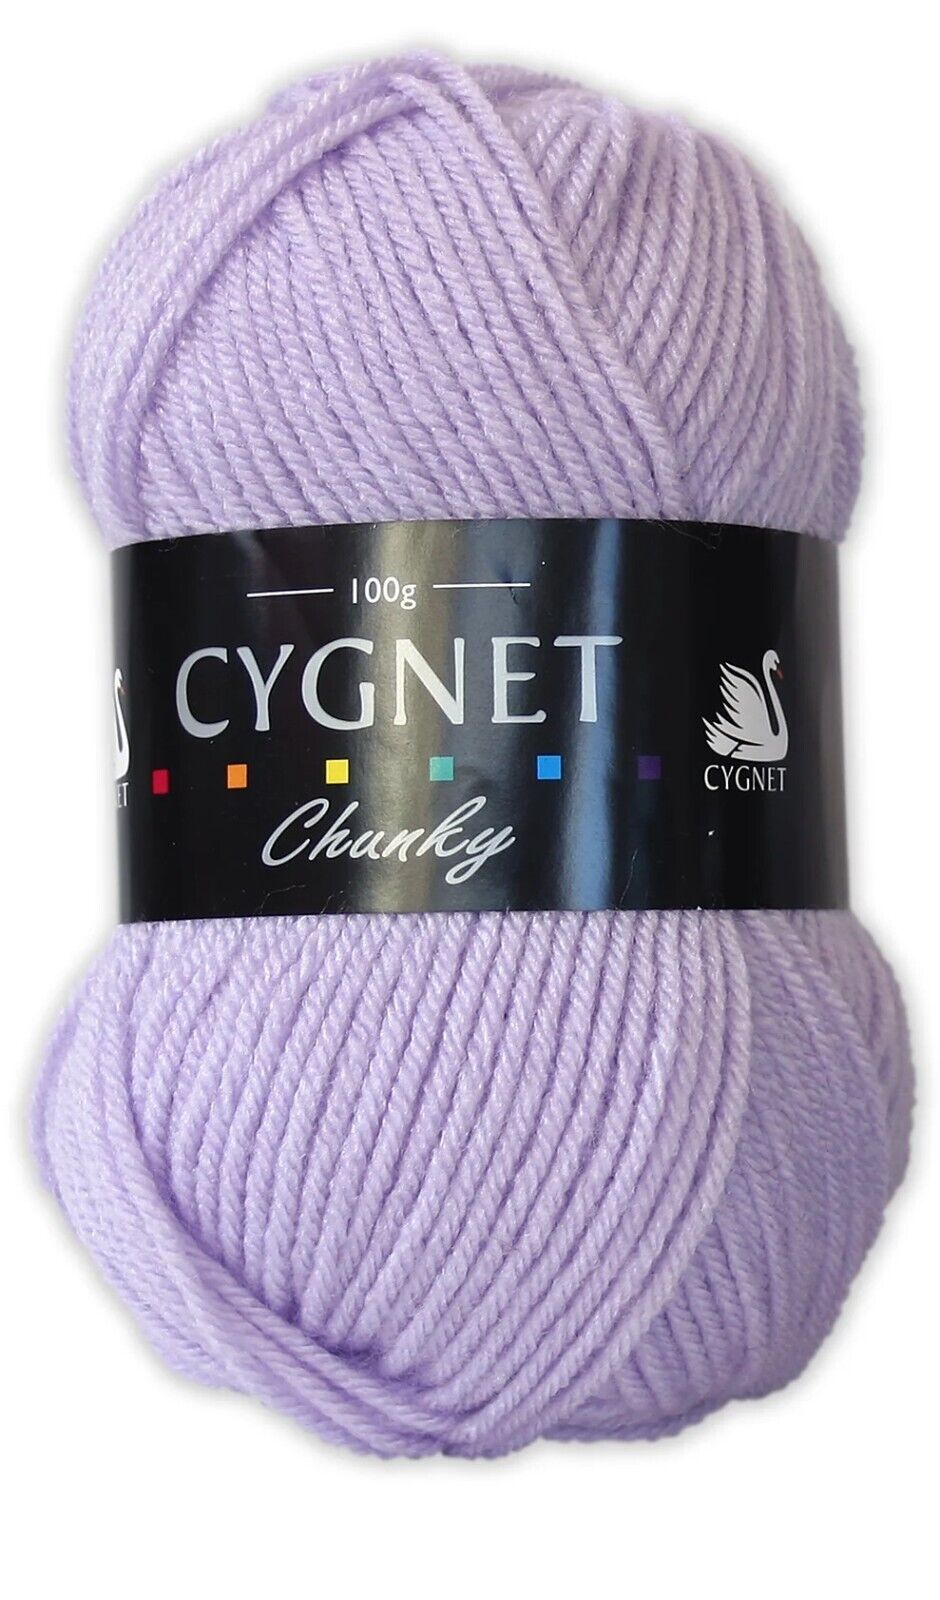 Cygnet CHUNKY Knitting Yarn / Wool - 100g Chunky Knit Ball - Soft Lilac